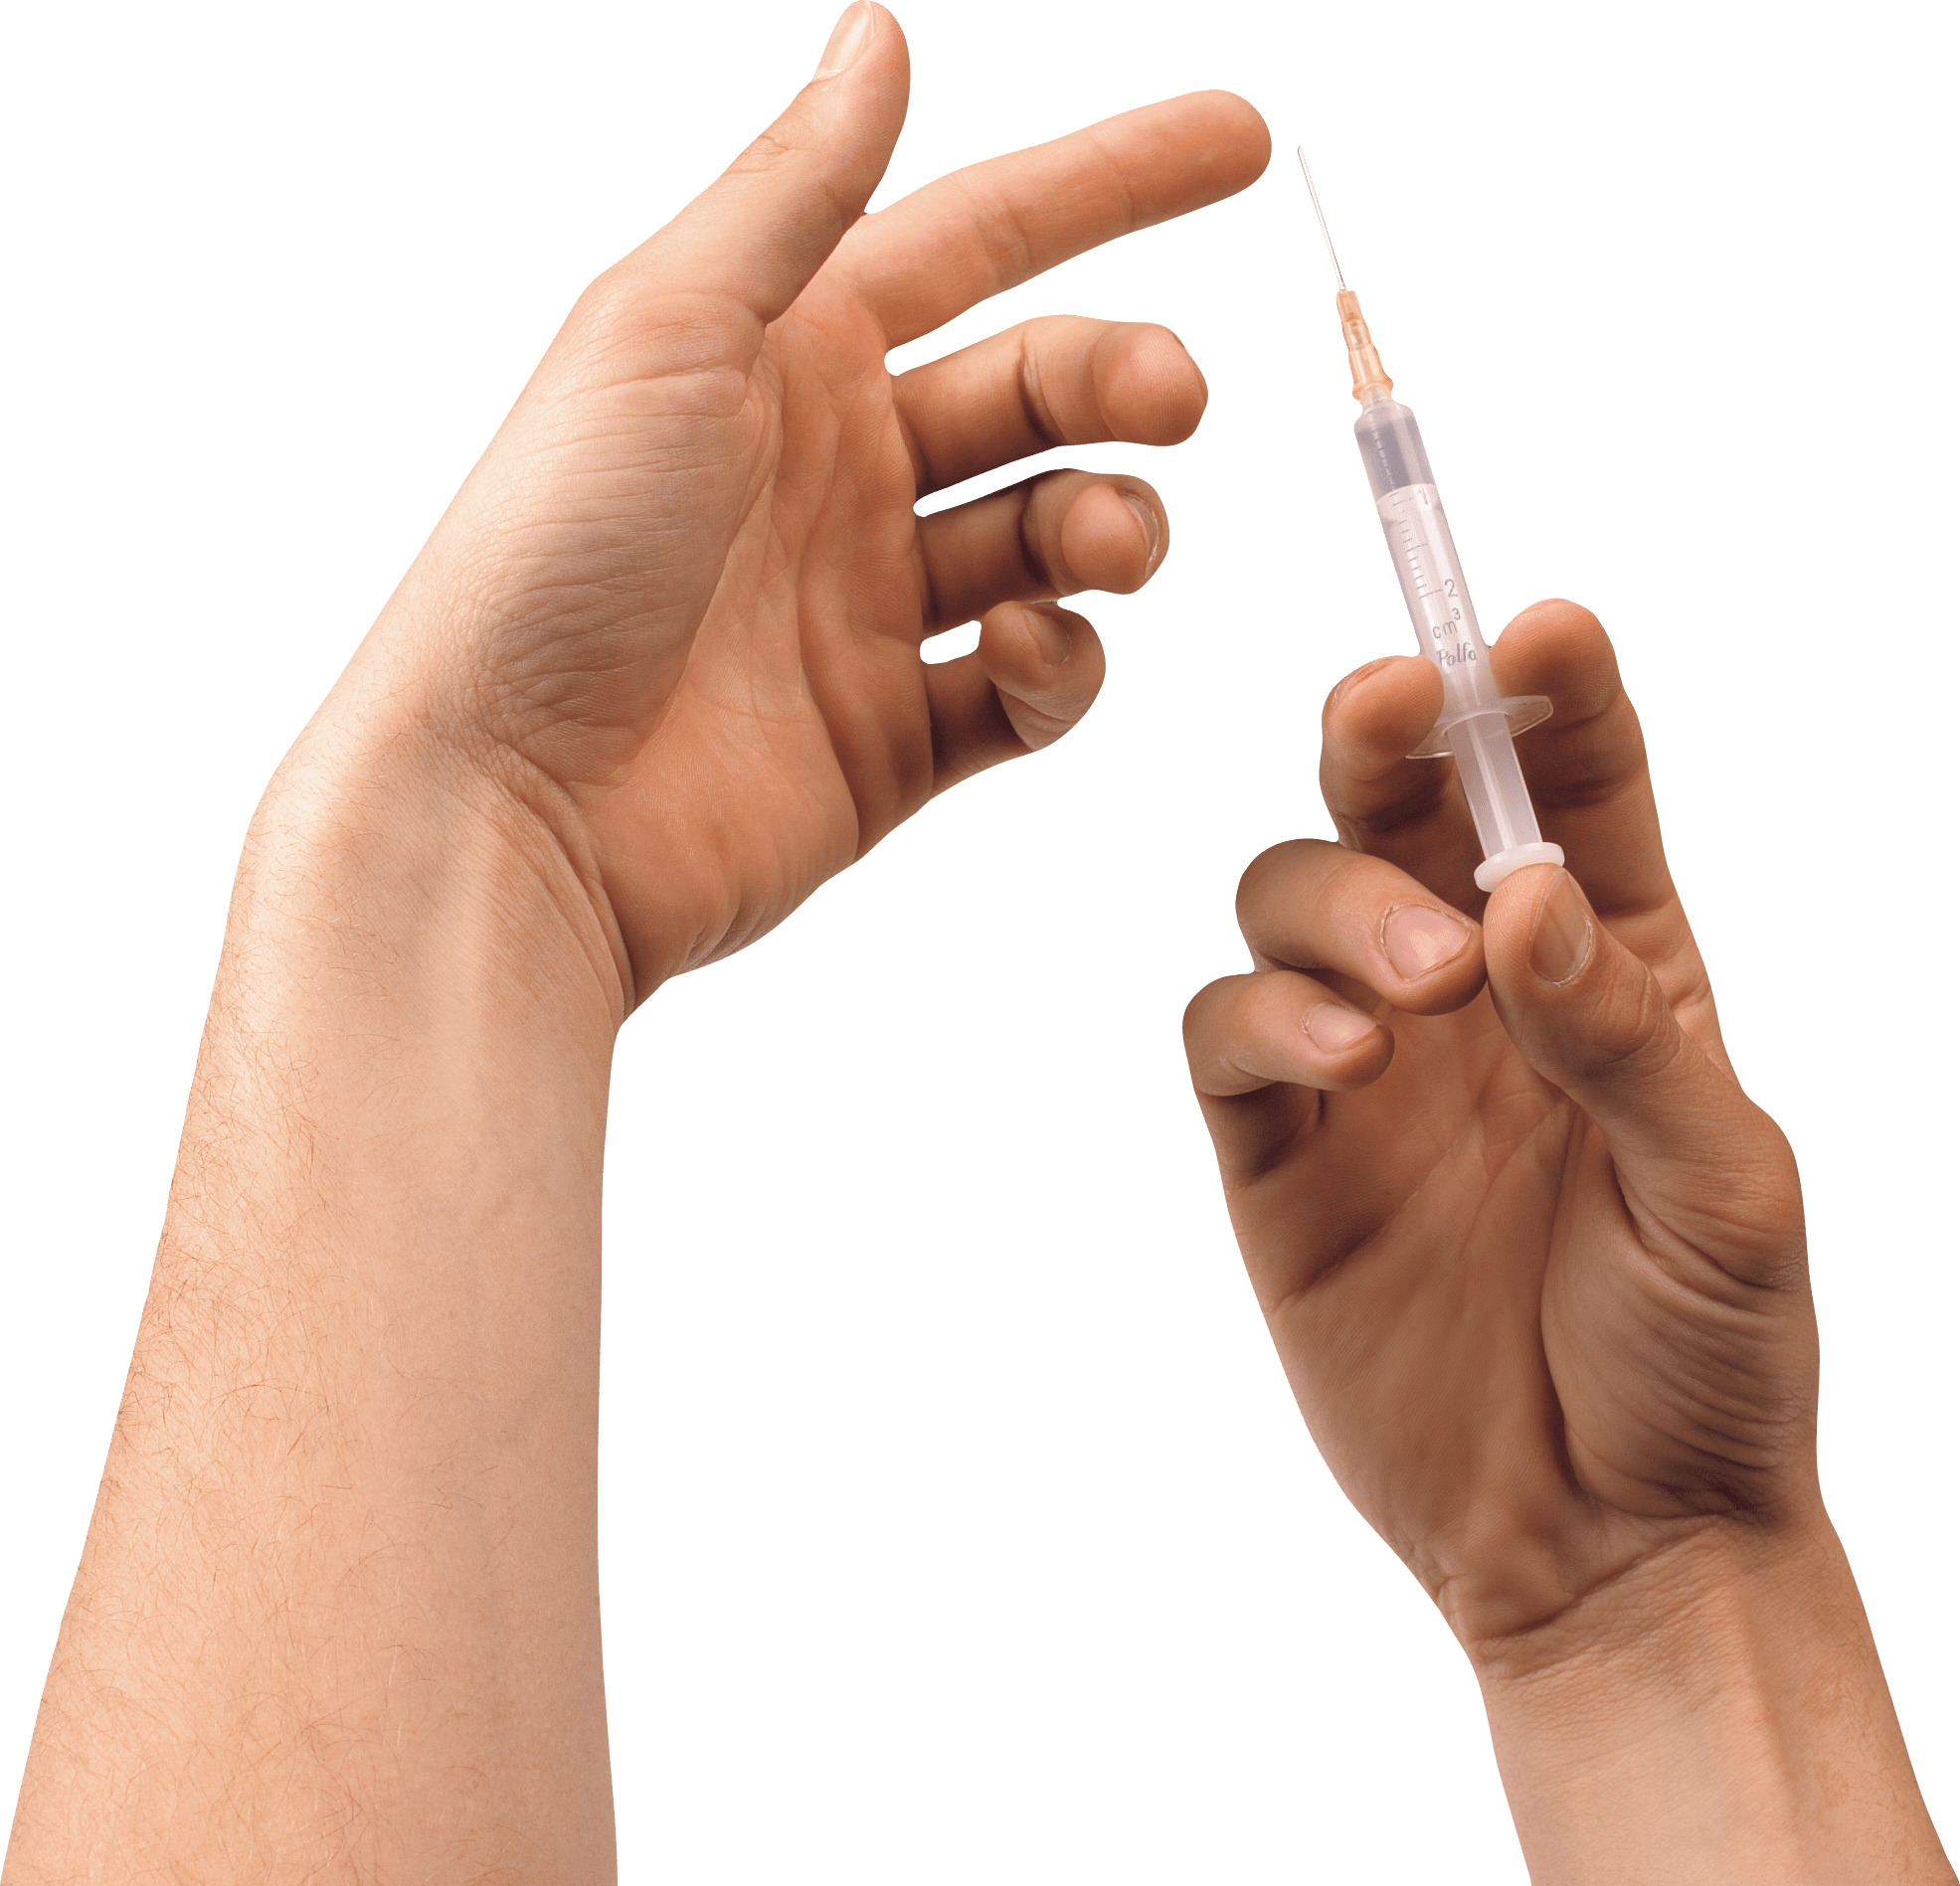 Manipulating Syringe icons